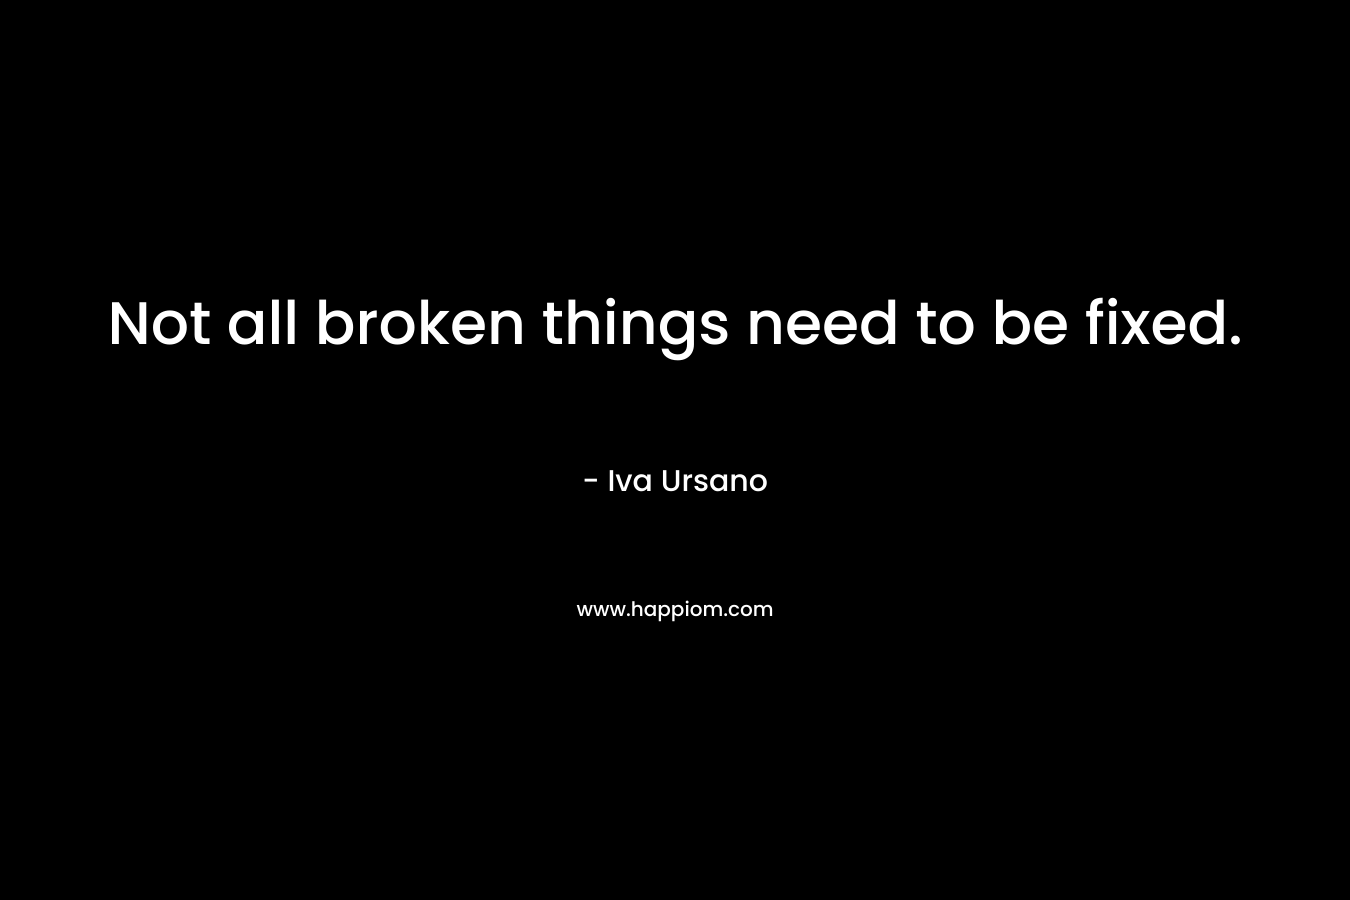 Not all broken things need to be fixed. – Iva Ursano